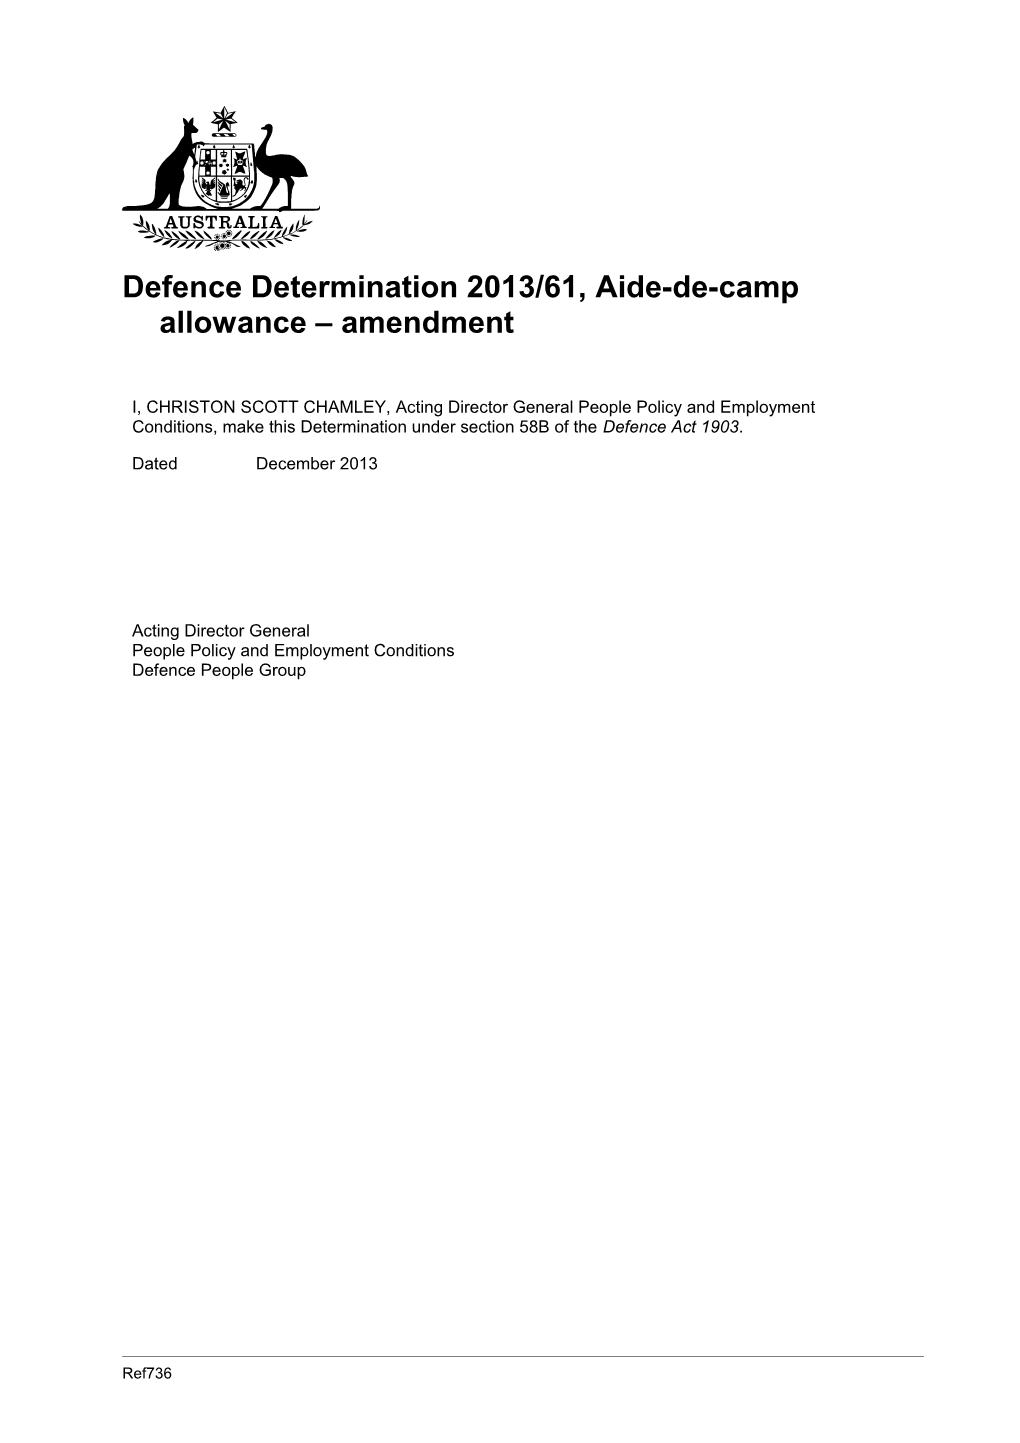 Defence Determination 2013/61, Aide-De-Camp Allowance Amendment